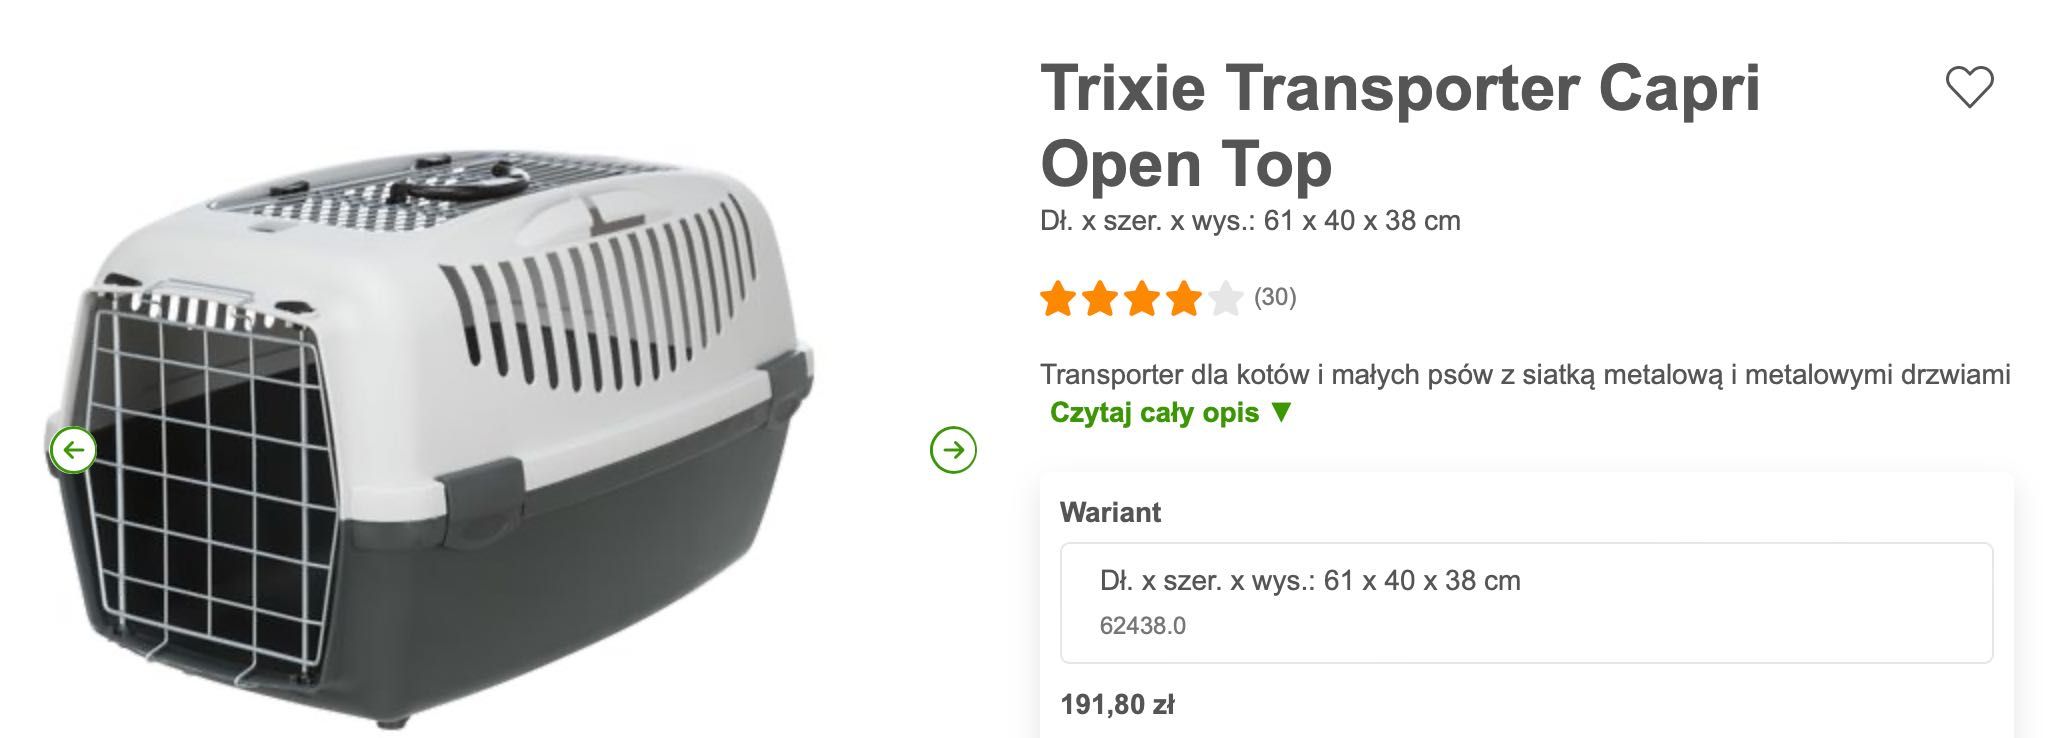 Trixie Transporter dla zwierząt Capri Open Top, NOWY